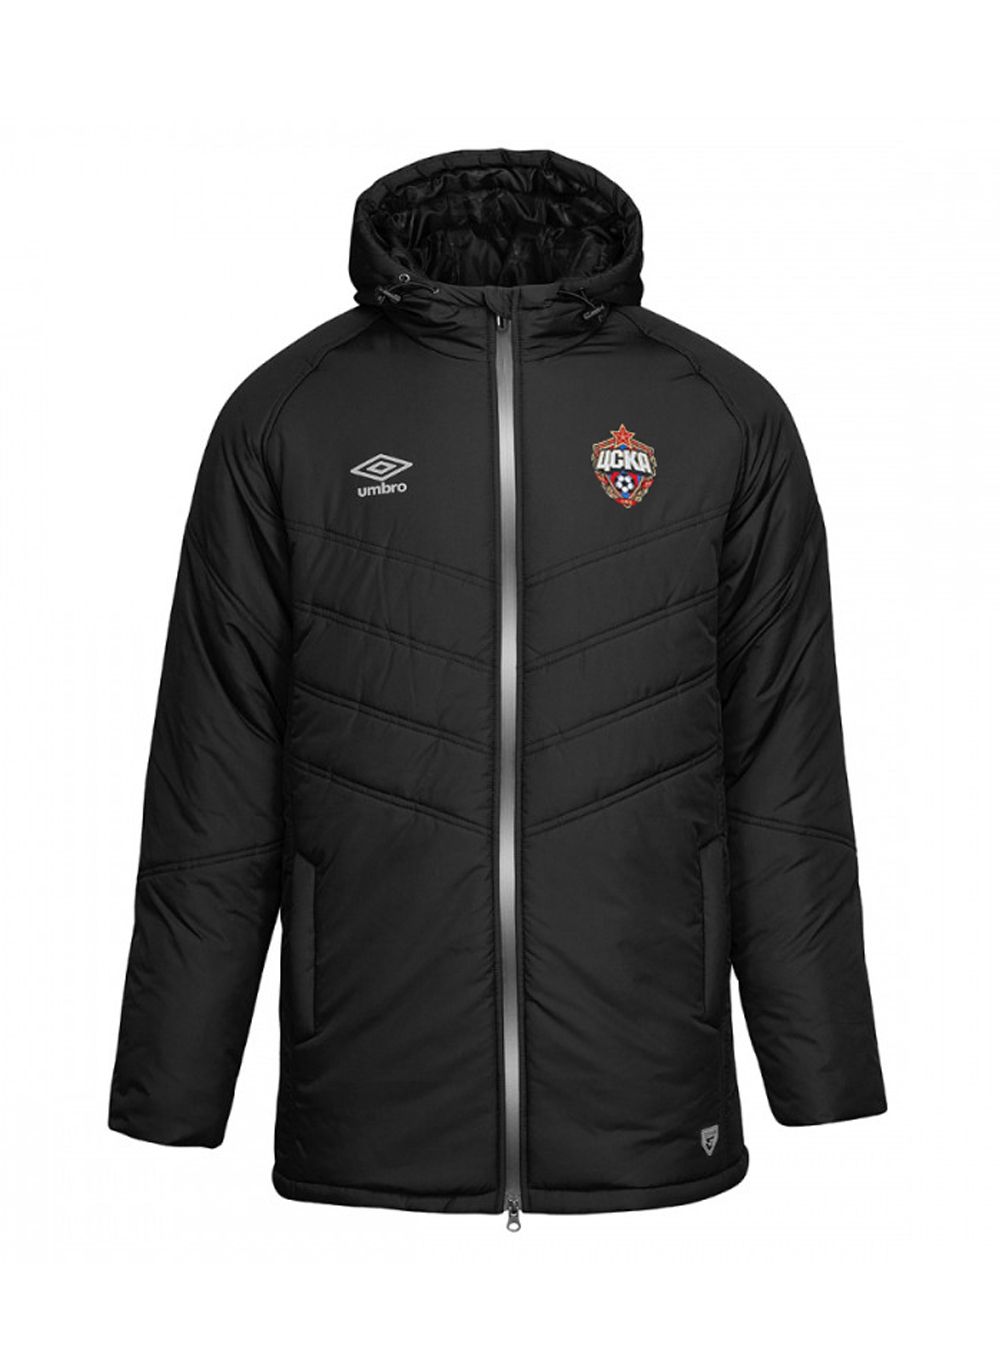 Купить Куртка утепленная черная (XL) по Нижнему Новгороду